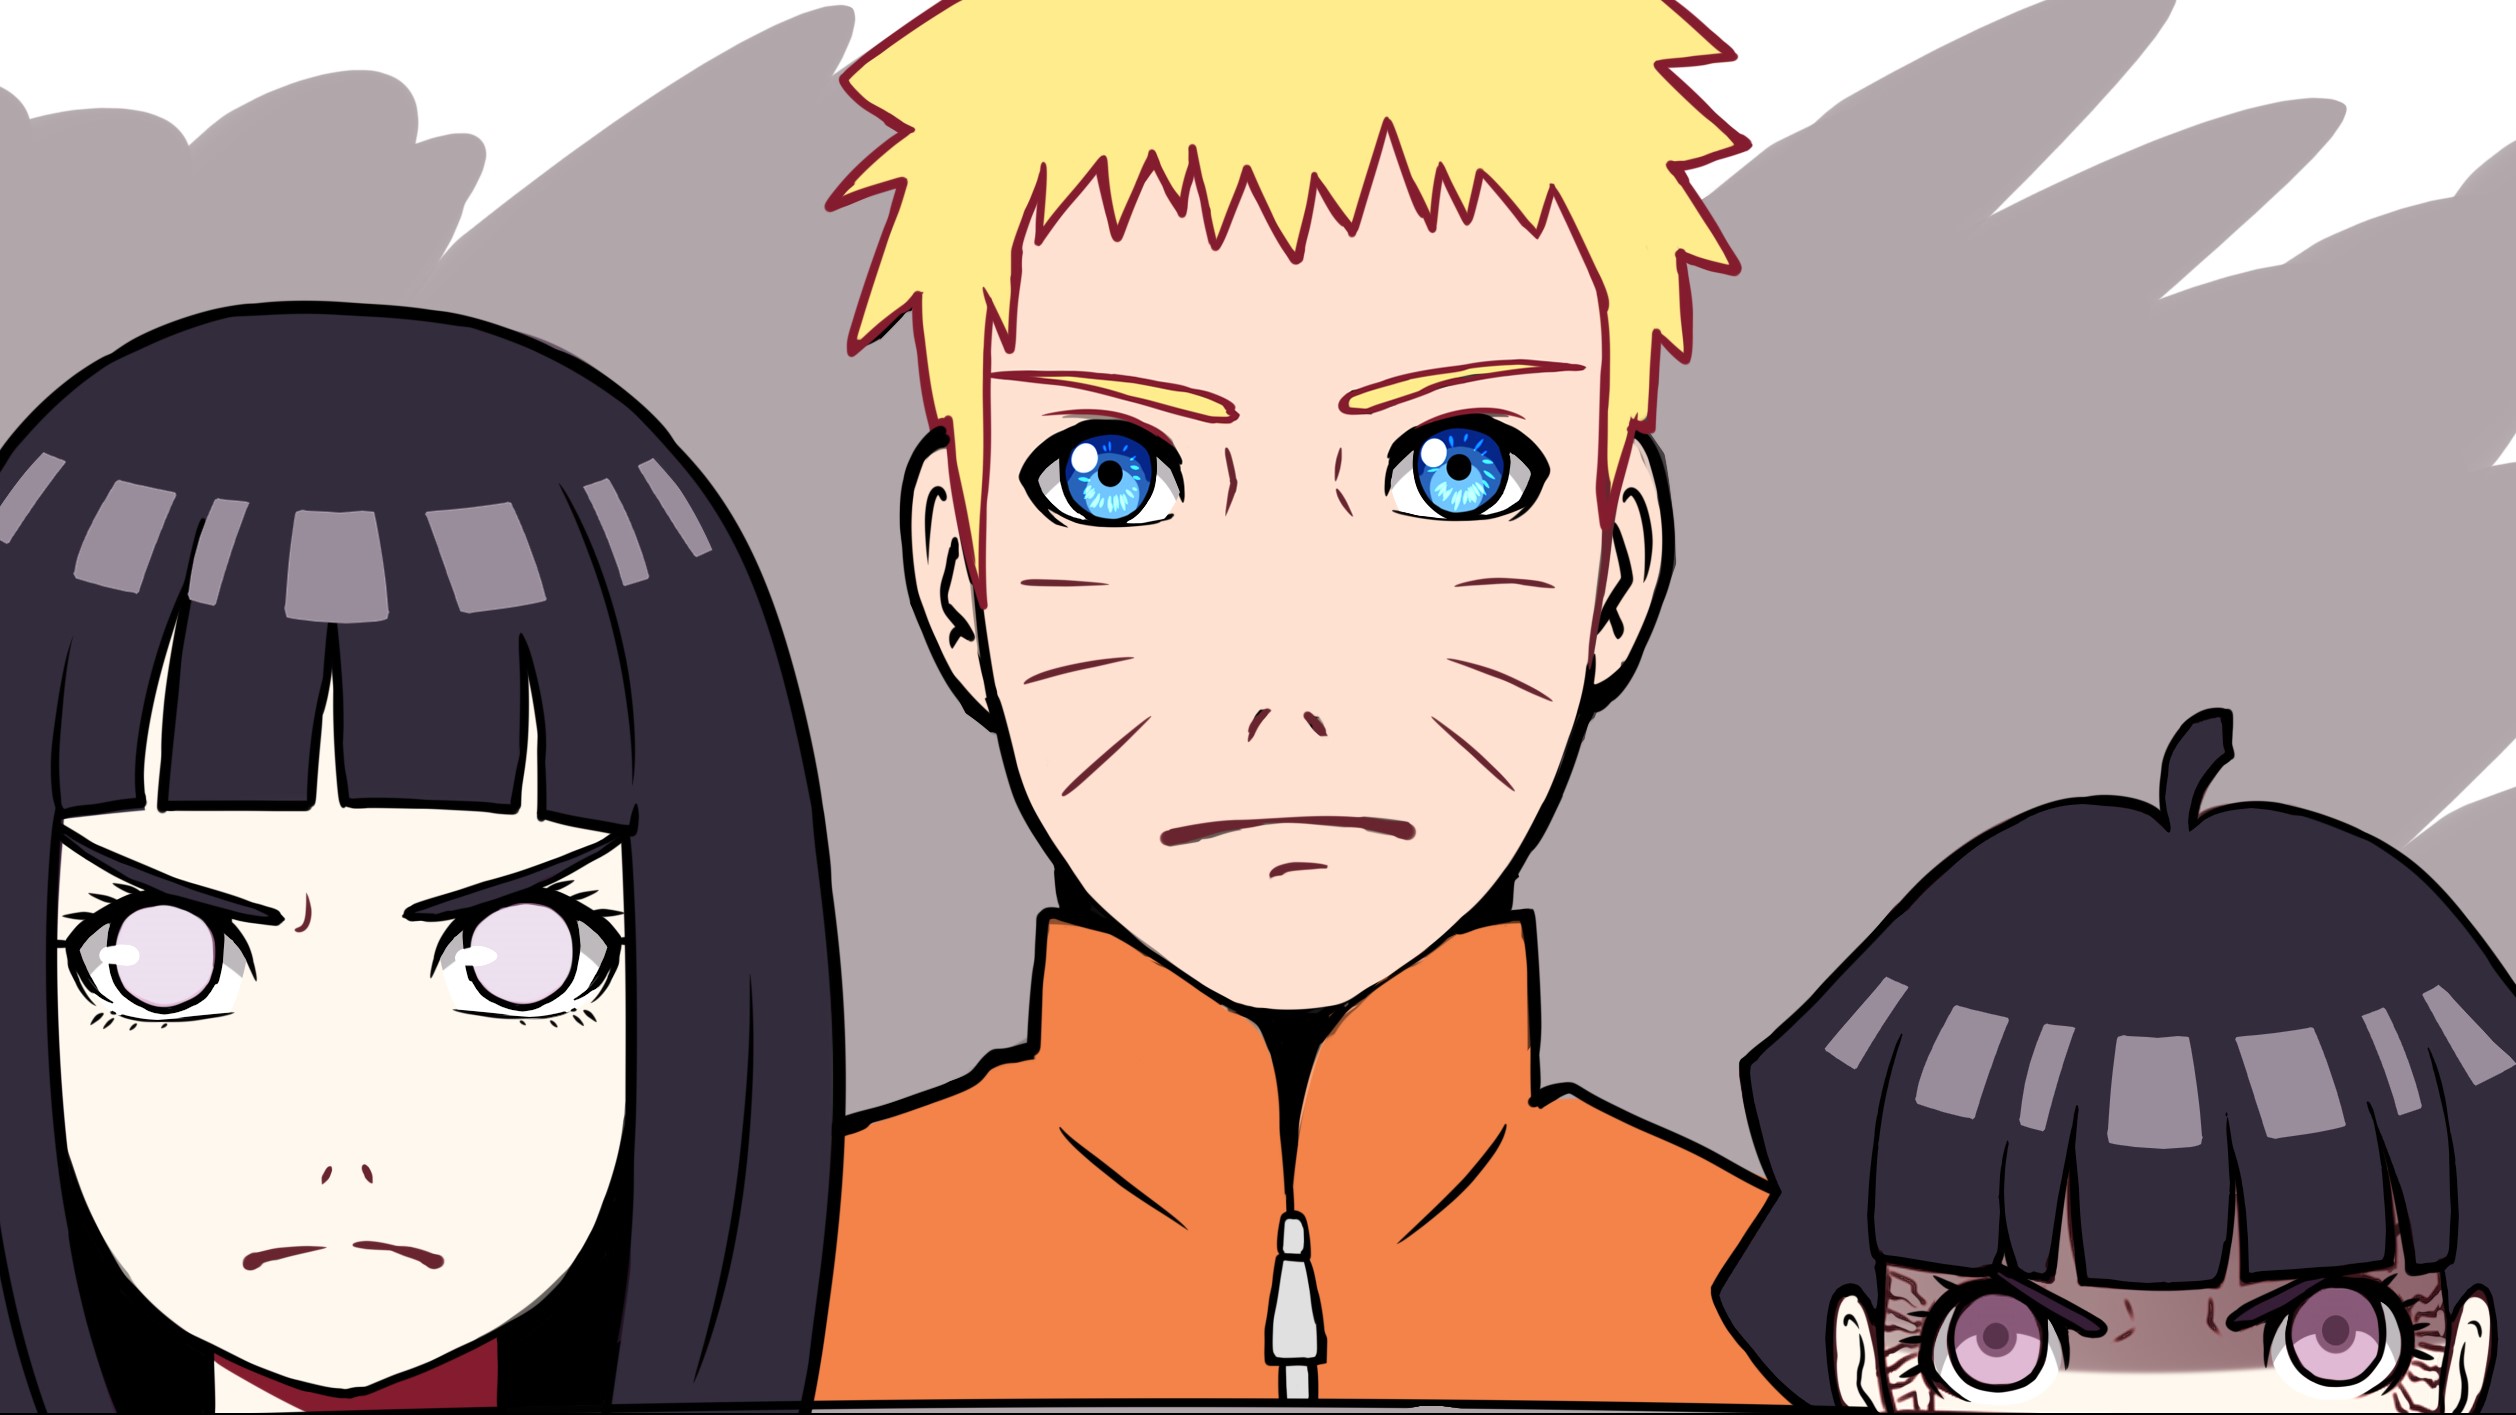 Free download wallpaper Anime, Naruto, Hinata Hyuga, Naruto Uzumaki, Himawari Uzumaki, Boruto on your PC desktop